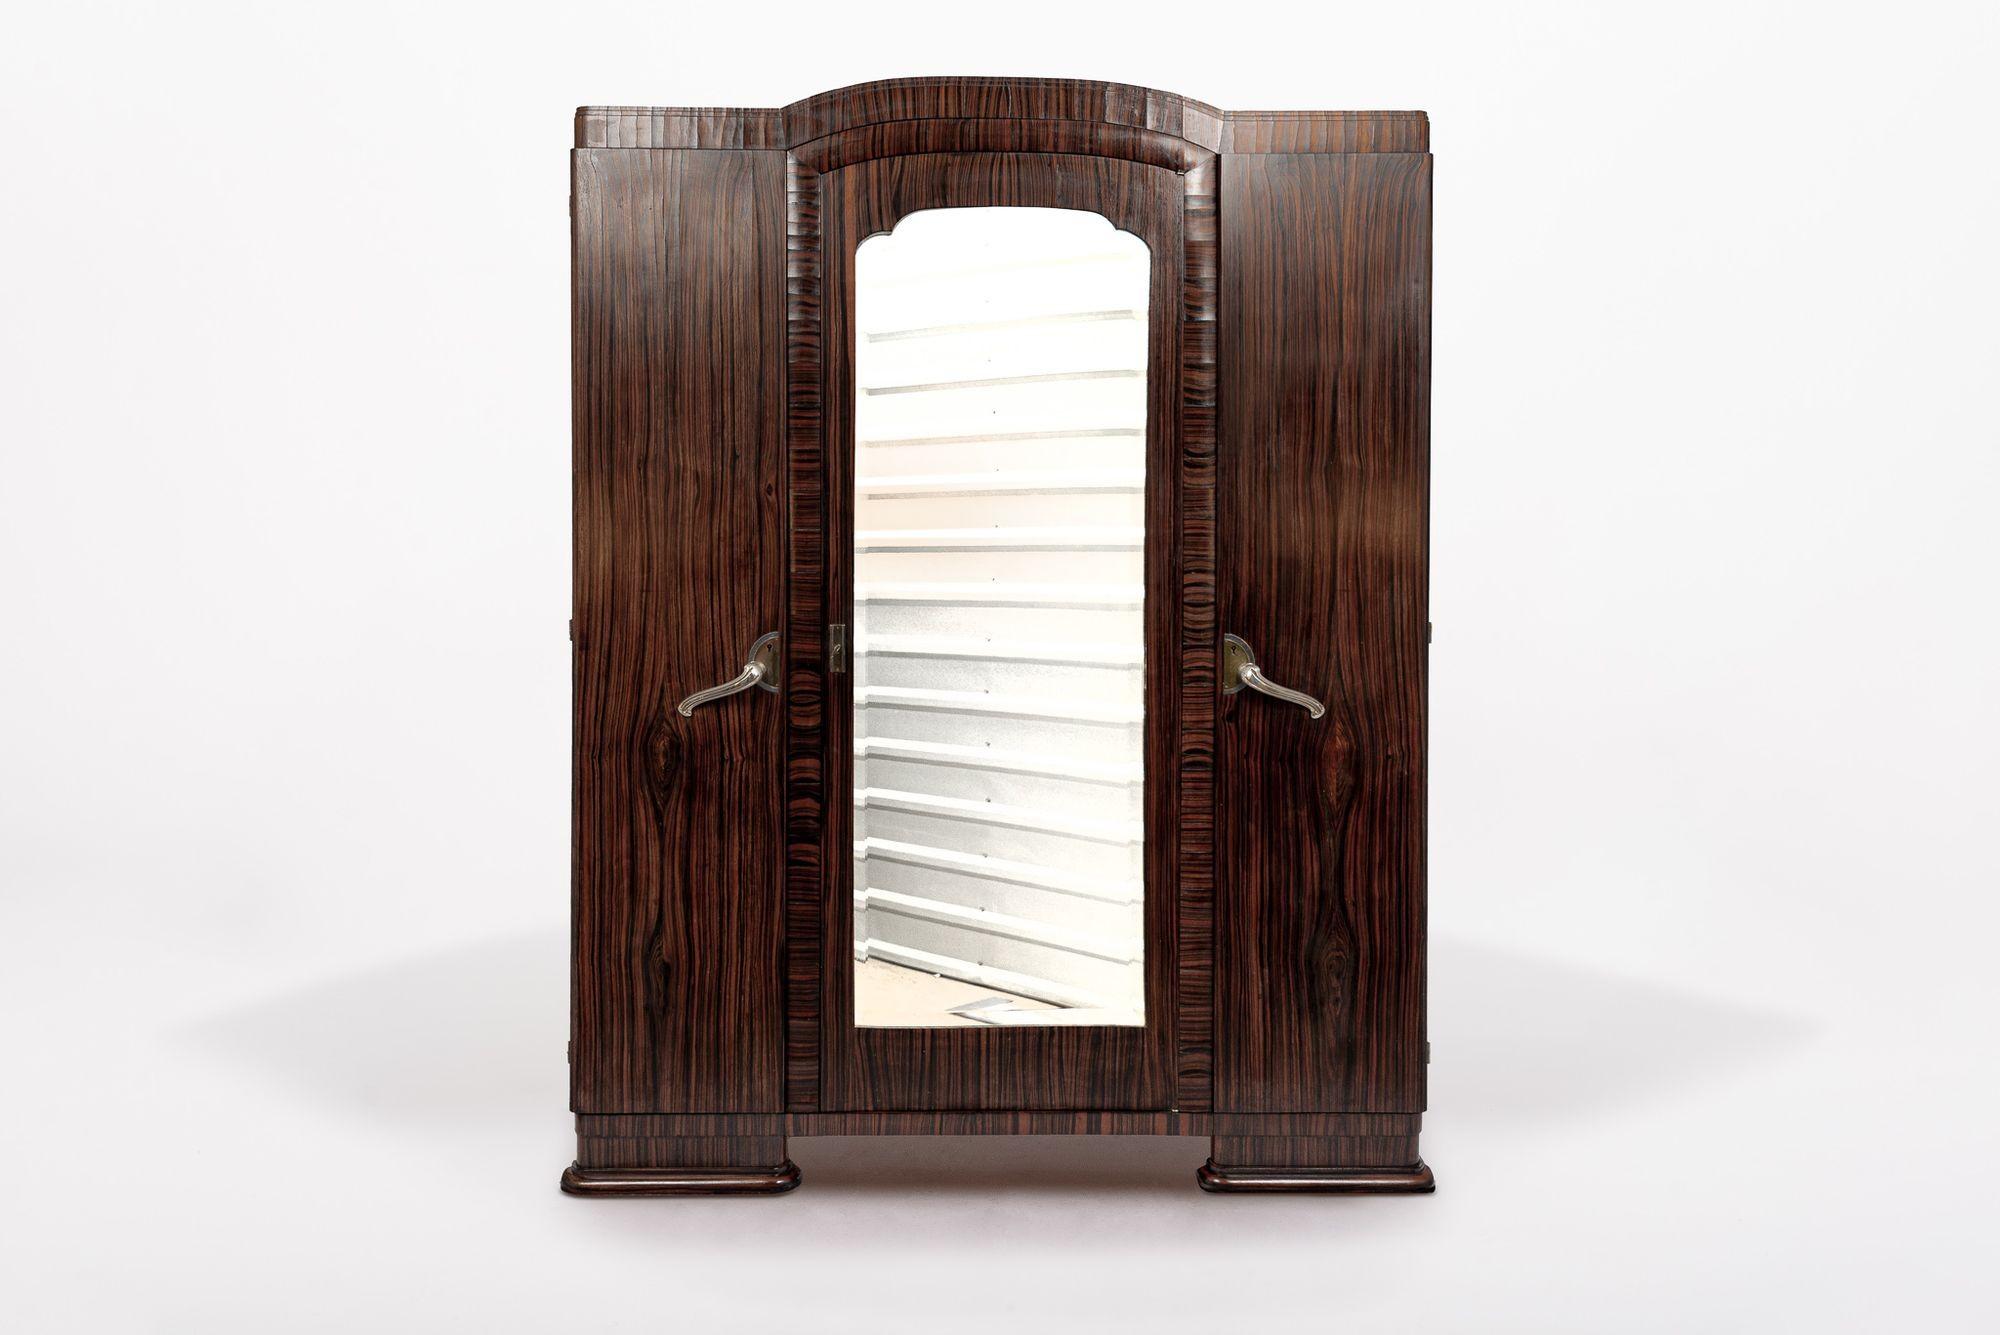 Dieser exquisite antike Art Deco Kleiderschrank aus Holz wurde um 1940 in Frankreich hergestellt. Dieser Hochschrank wurde in tadelloser Handarbeit aus Massivholz und Makassar-Ebenholzfurnier gefertigt und besticht durch seine tiefe, dunkelbraune